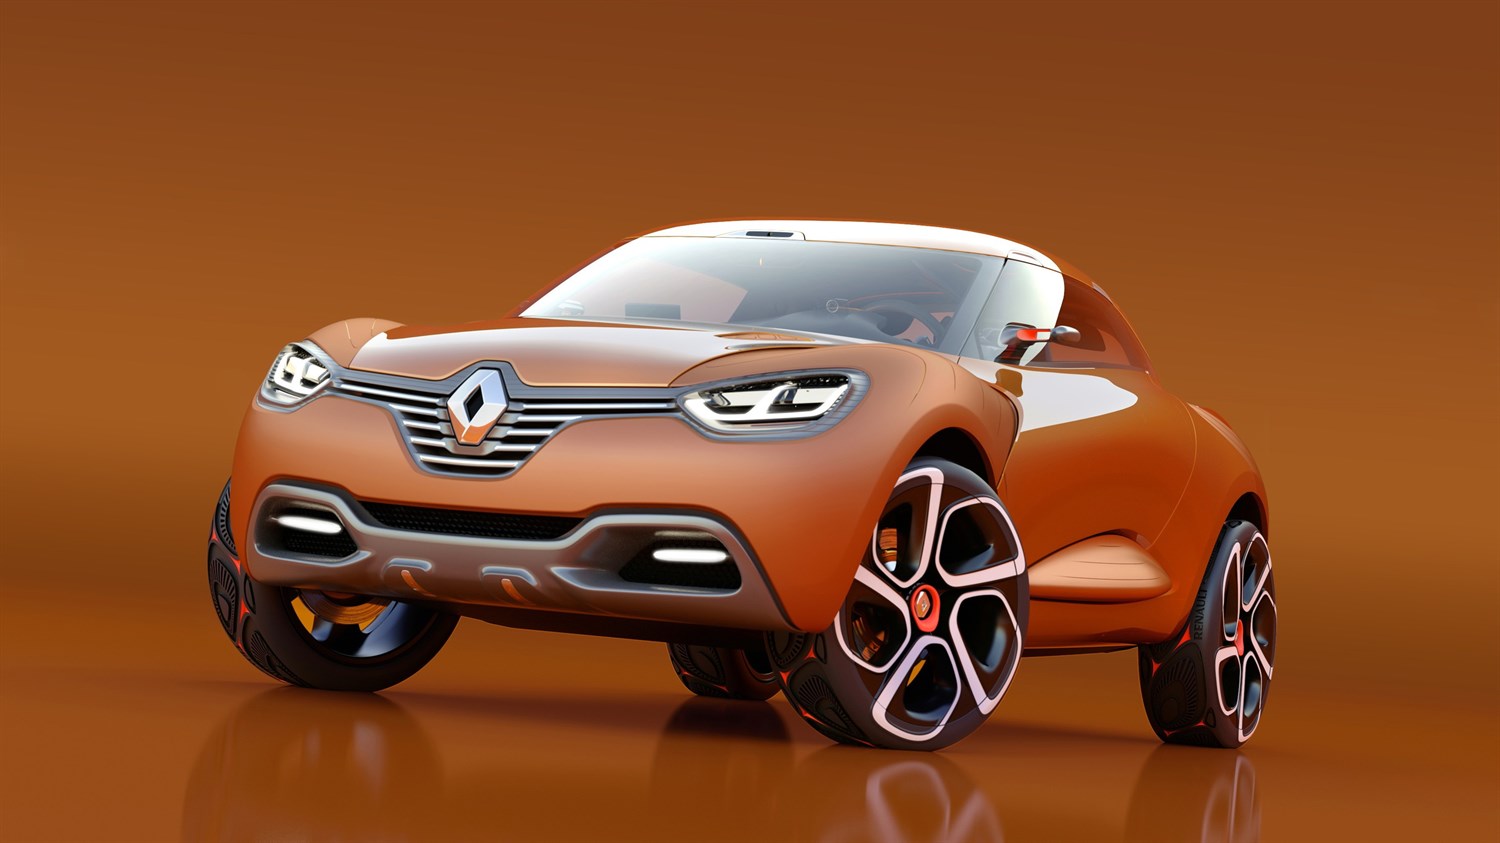 Renault CAPTUR Concept - 3/4 left front end view of vehicle
